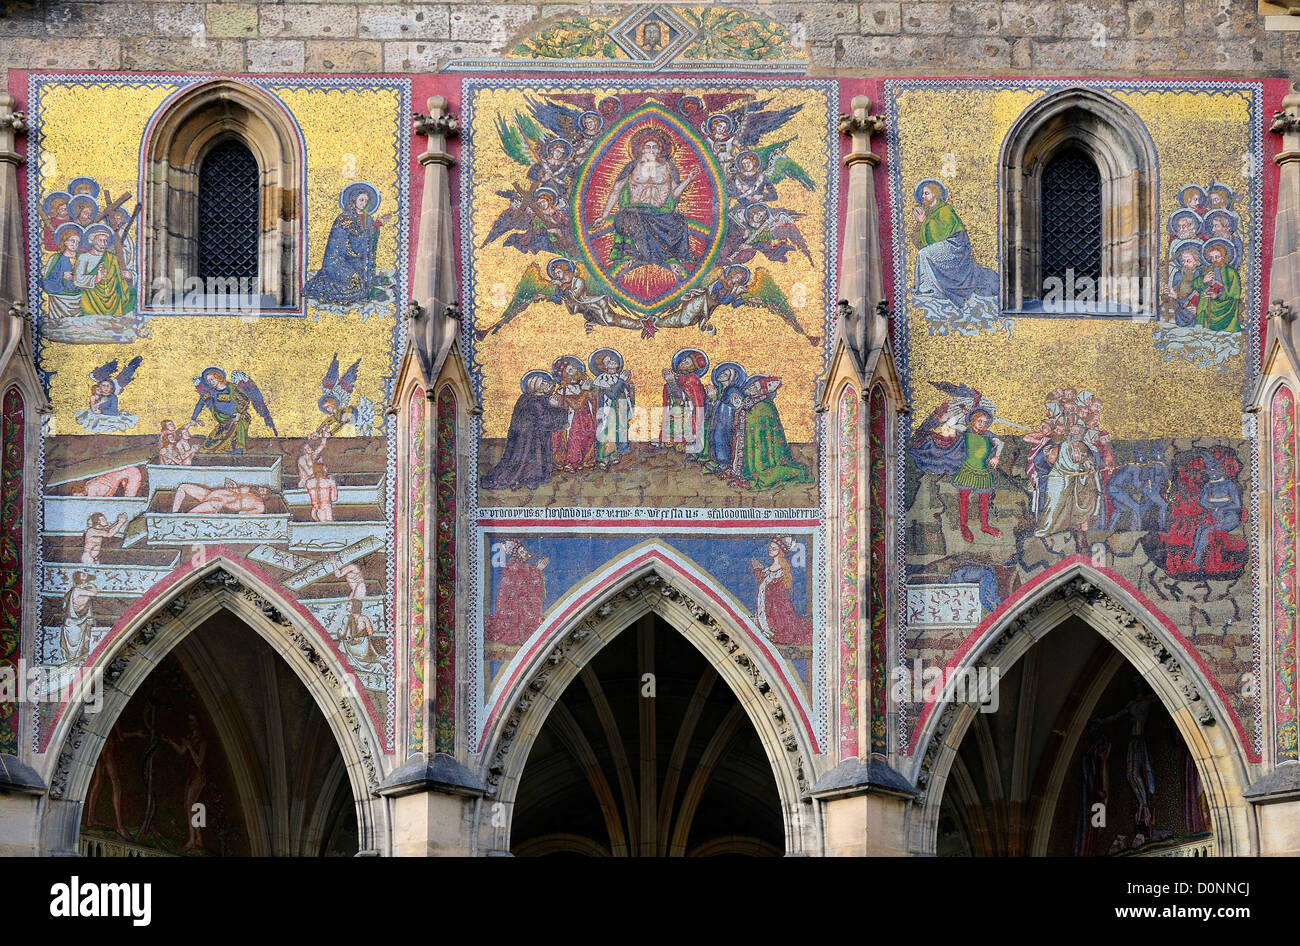 Prag, Tschechische Republik. St-Veits-Dom. Golden-Portal - Mosaik des jüngsten Gerichts, 14thC von venezianischen Künstlern, restauriert Stockfoto